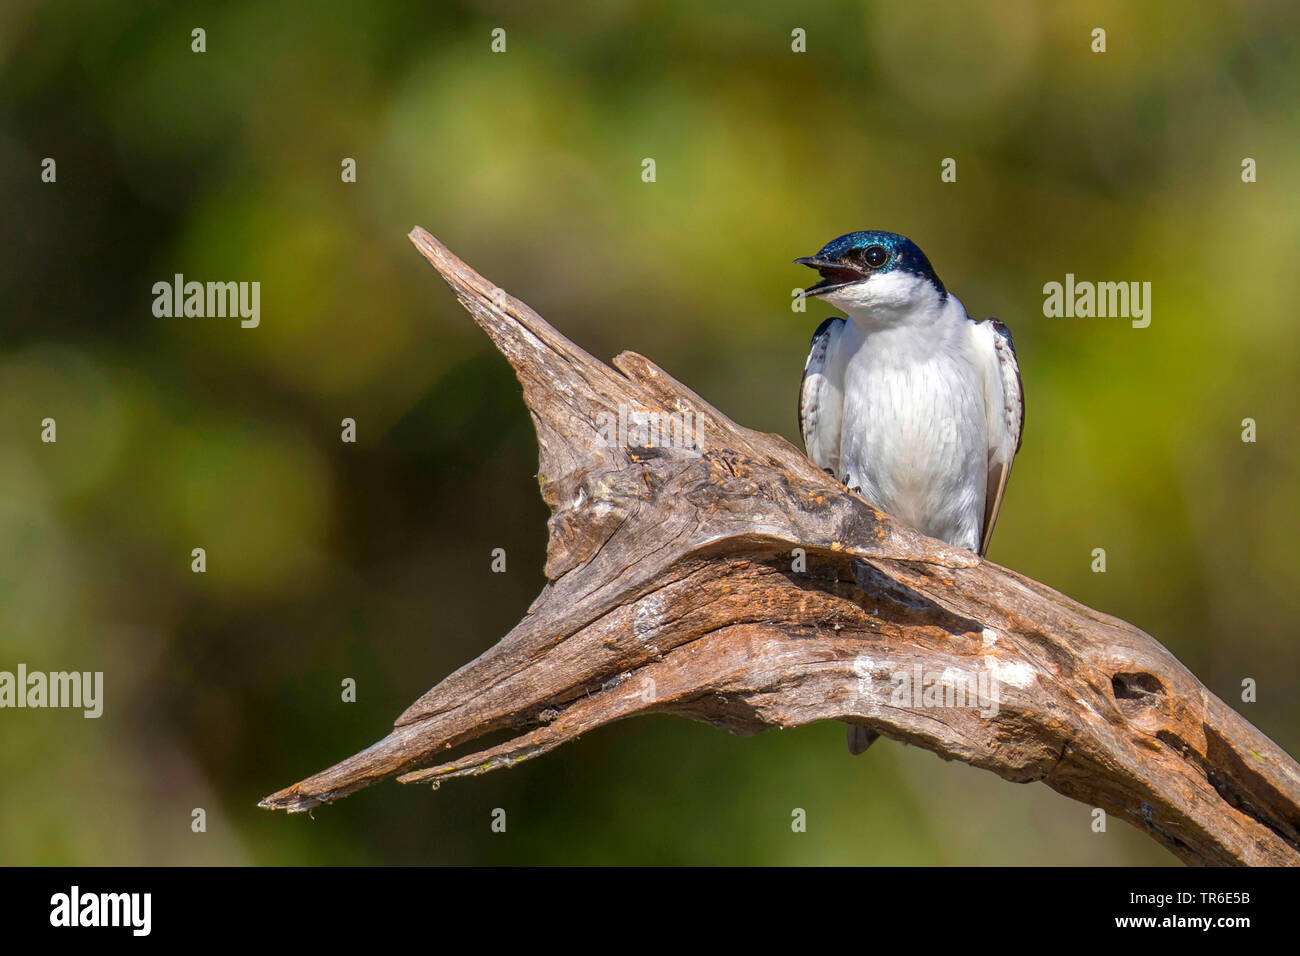 blue and white swallow (Notiochelidon cyanoleuca), sitting on dead wood, Brazil, Pantanal, Pantanal Matogrossense National Park Stock Photo